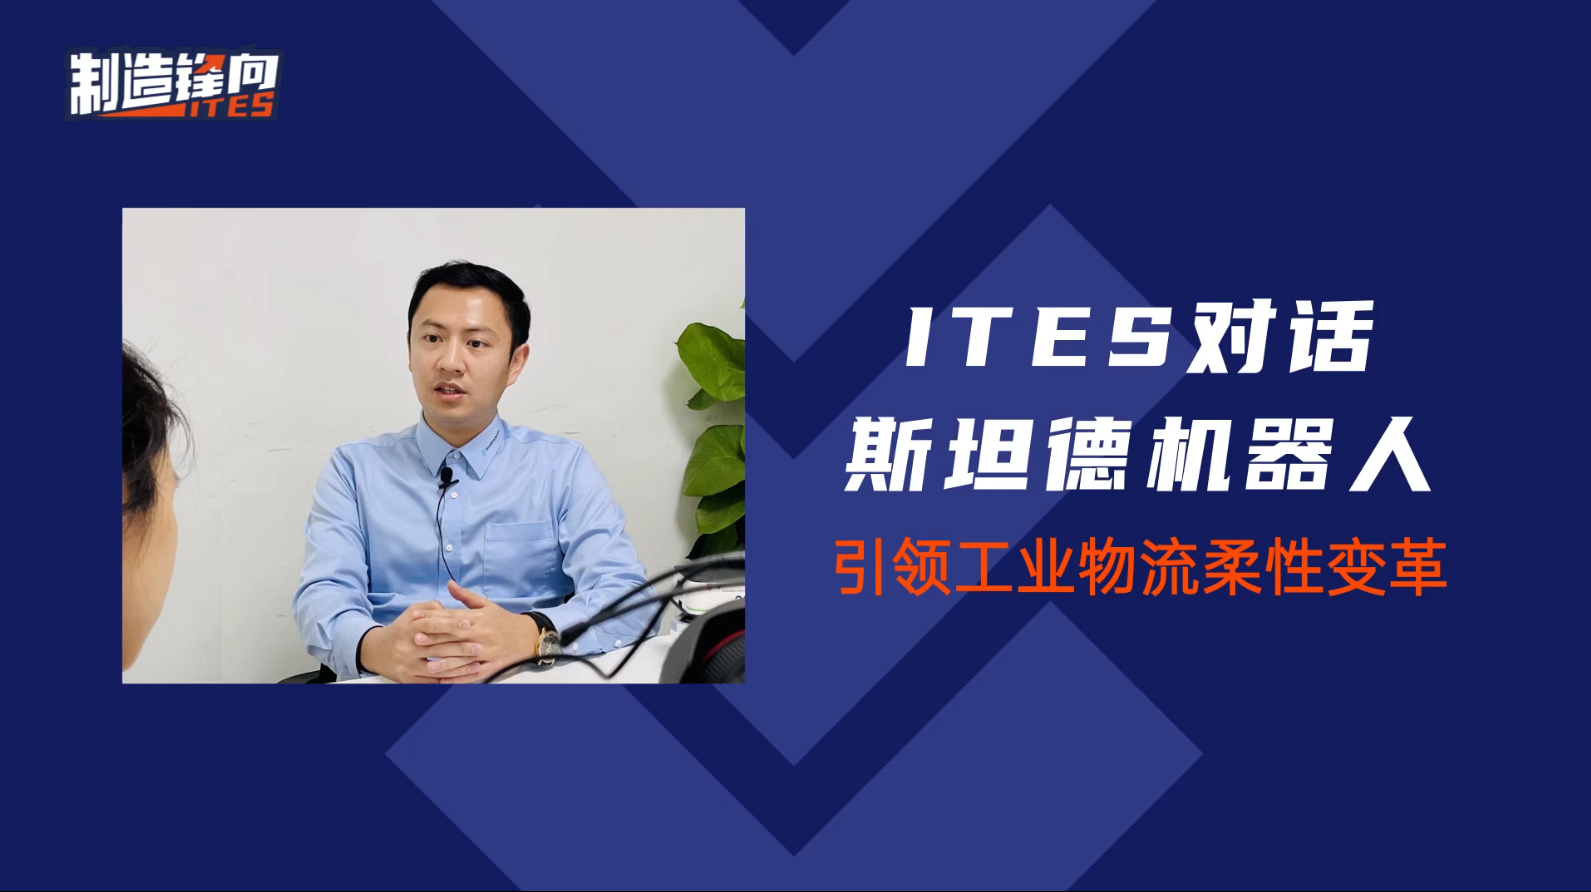 本視頻為ITES深圳工業展對話斯坦德機器人運營總監梁凱翔先生的采訪實錄，讓我們一起走進3C及半導體行業市占率第一名的斯坦德機器人！